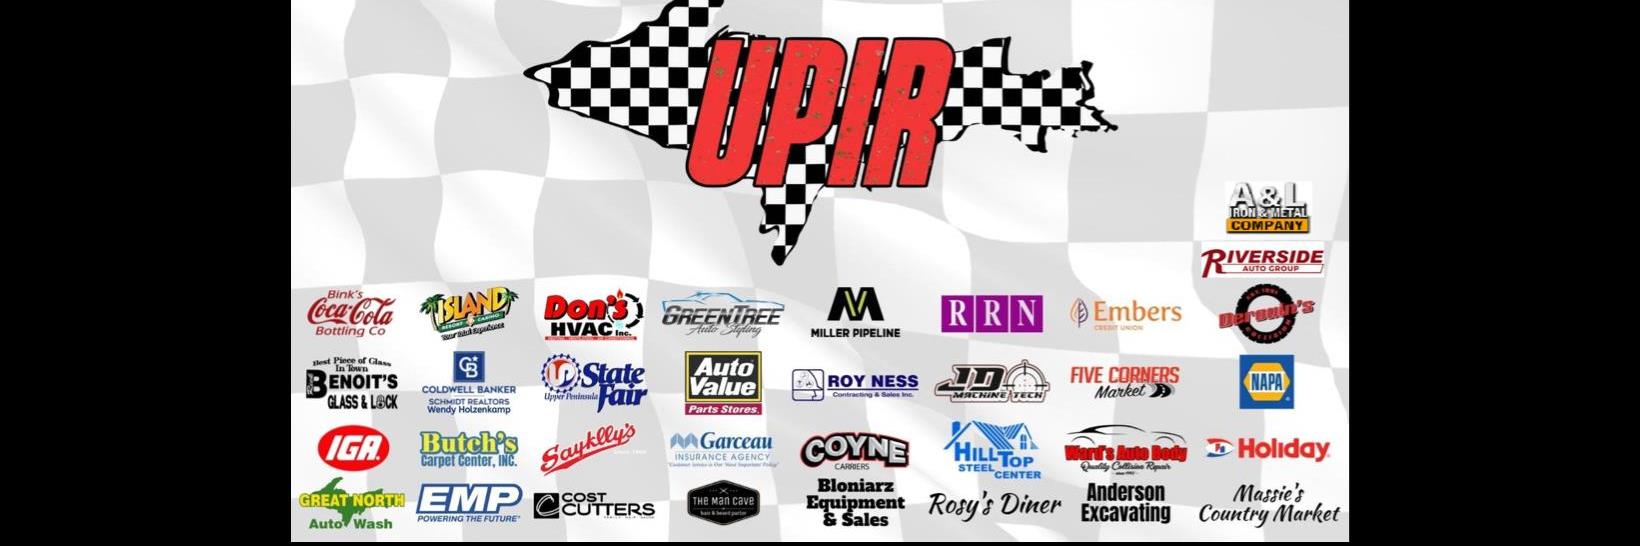 6/11/2022 - Upper Peninsula International Raceway